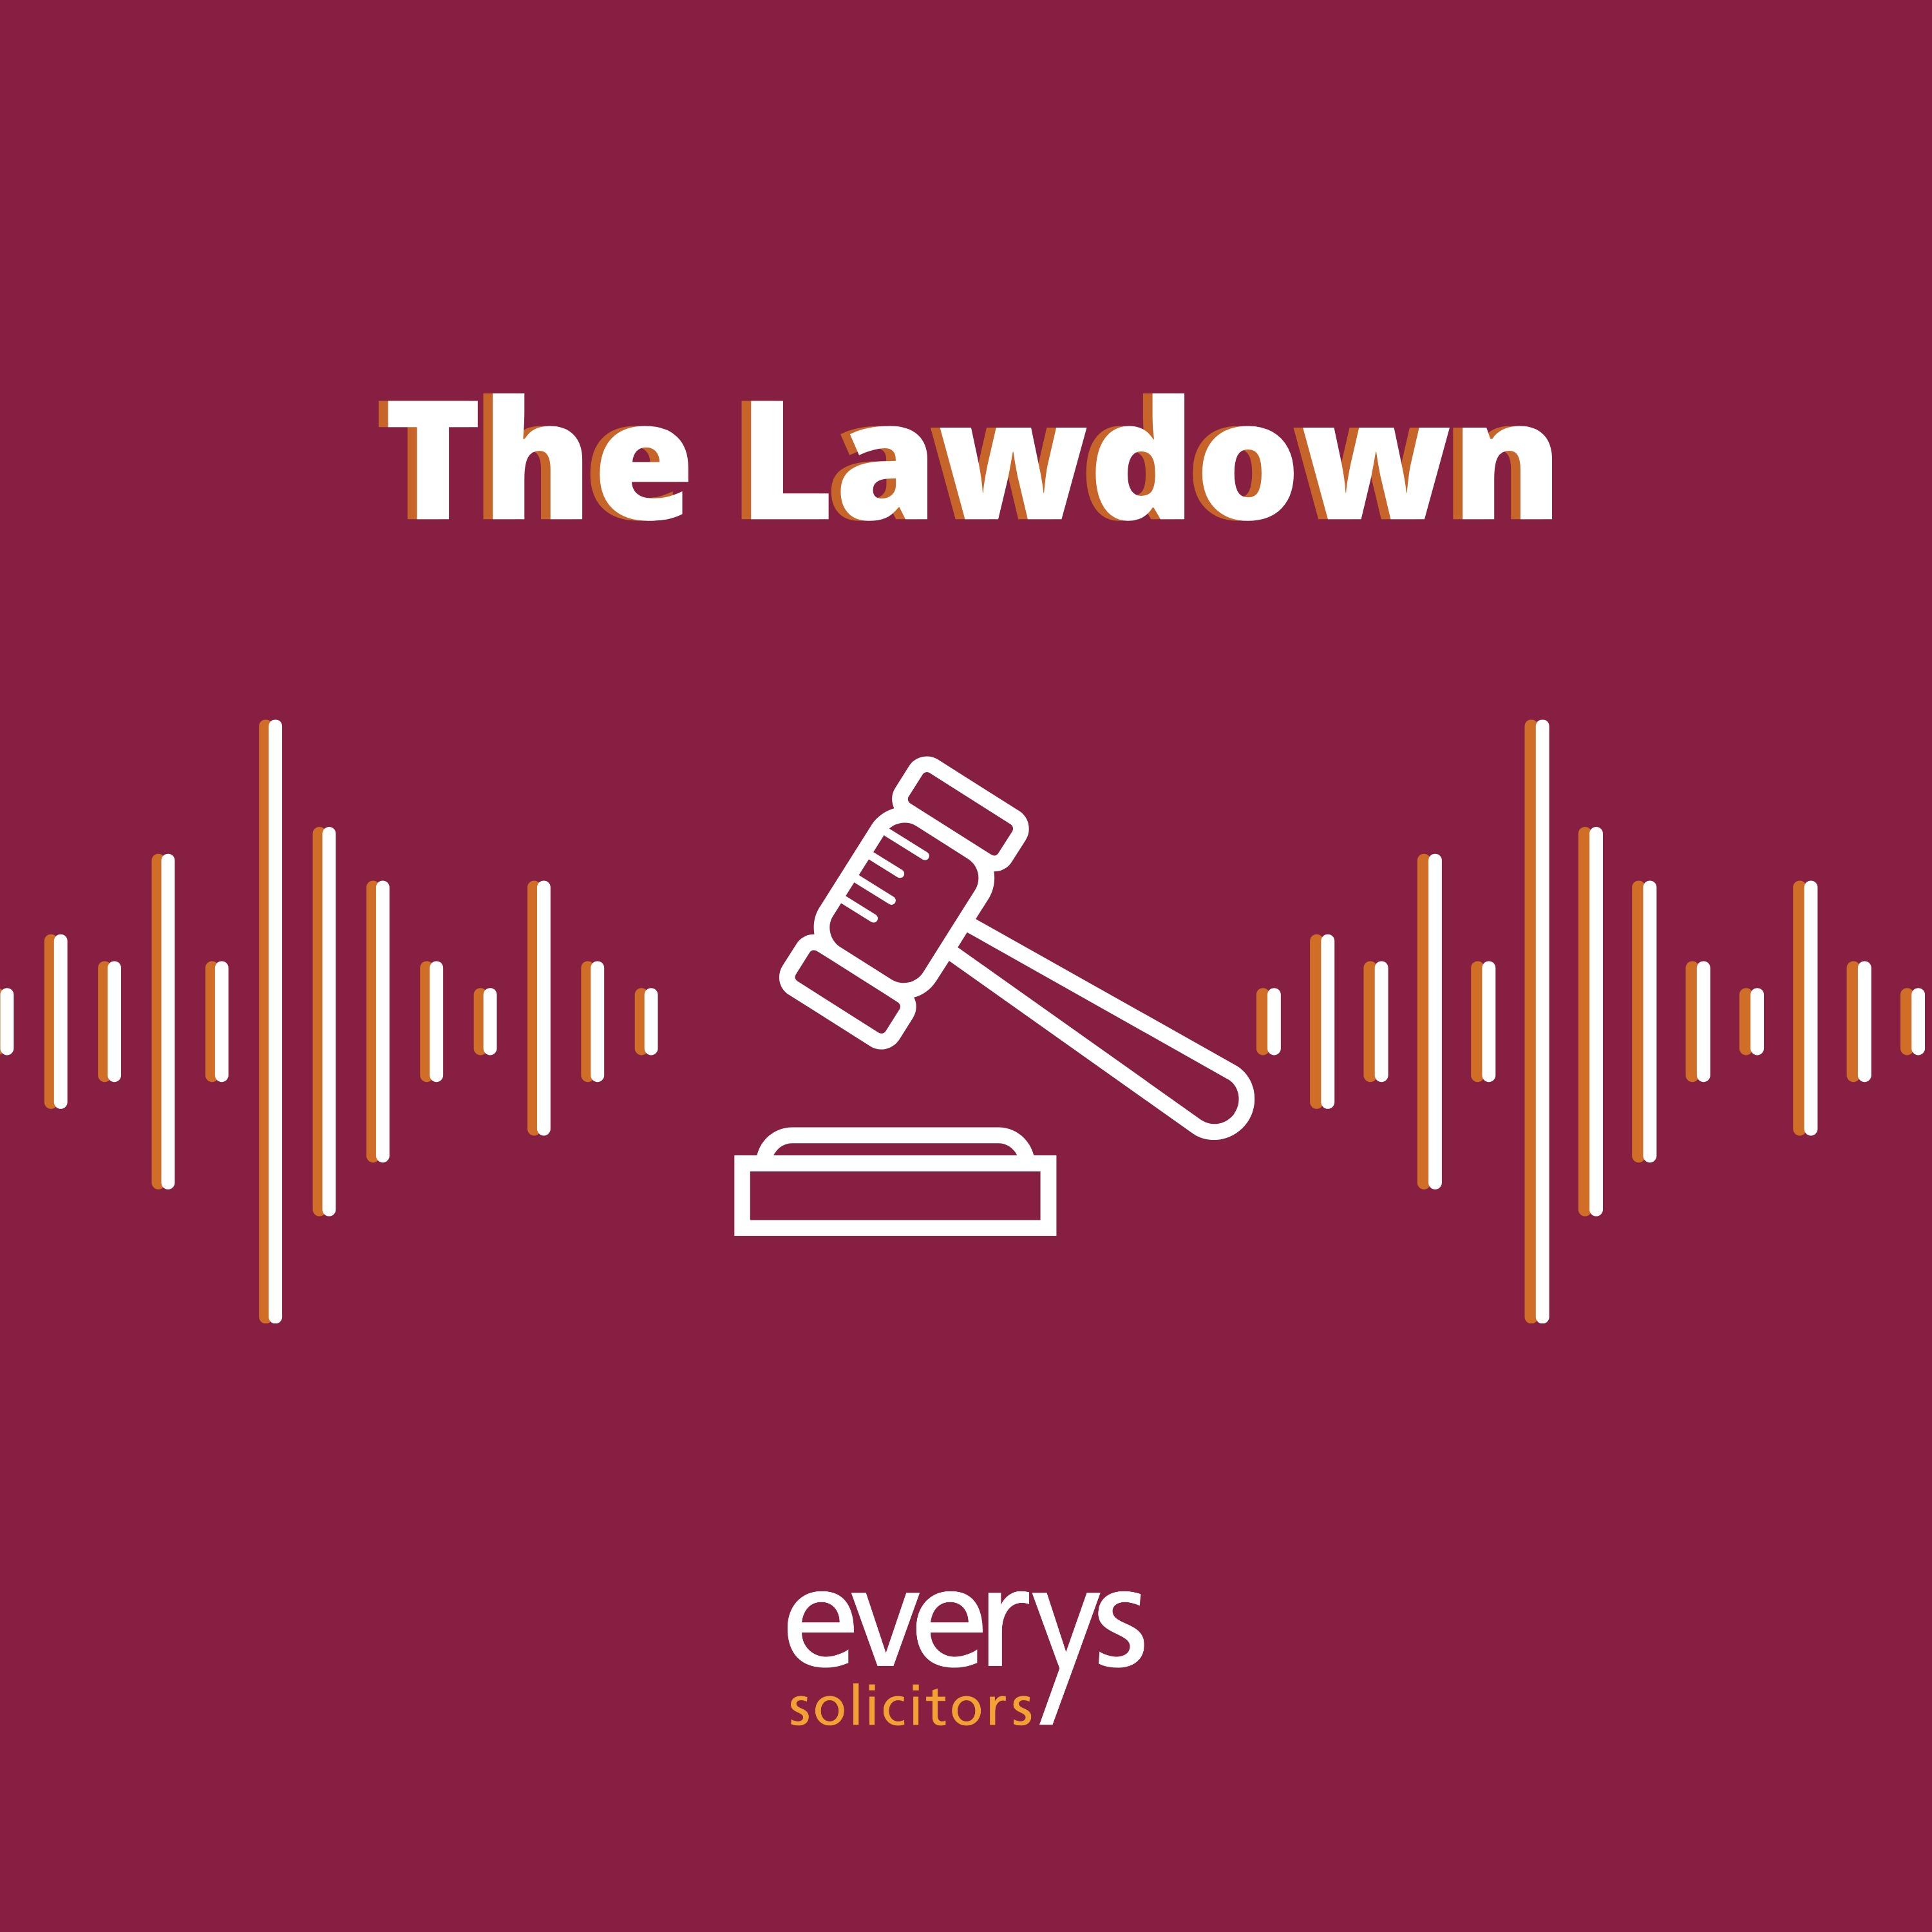 The Lawdown